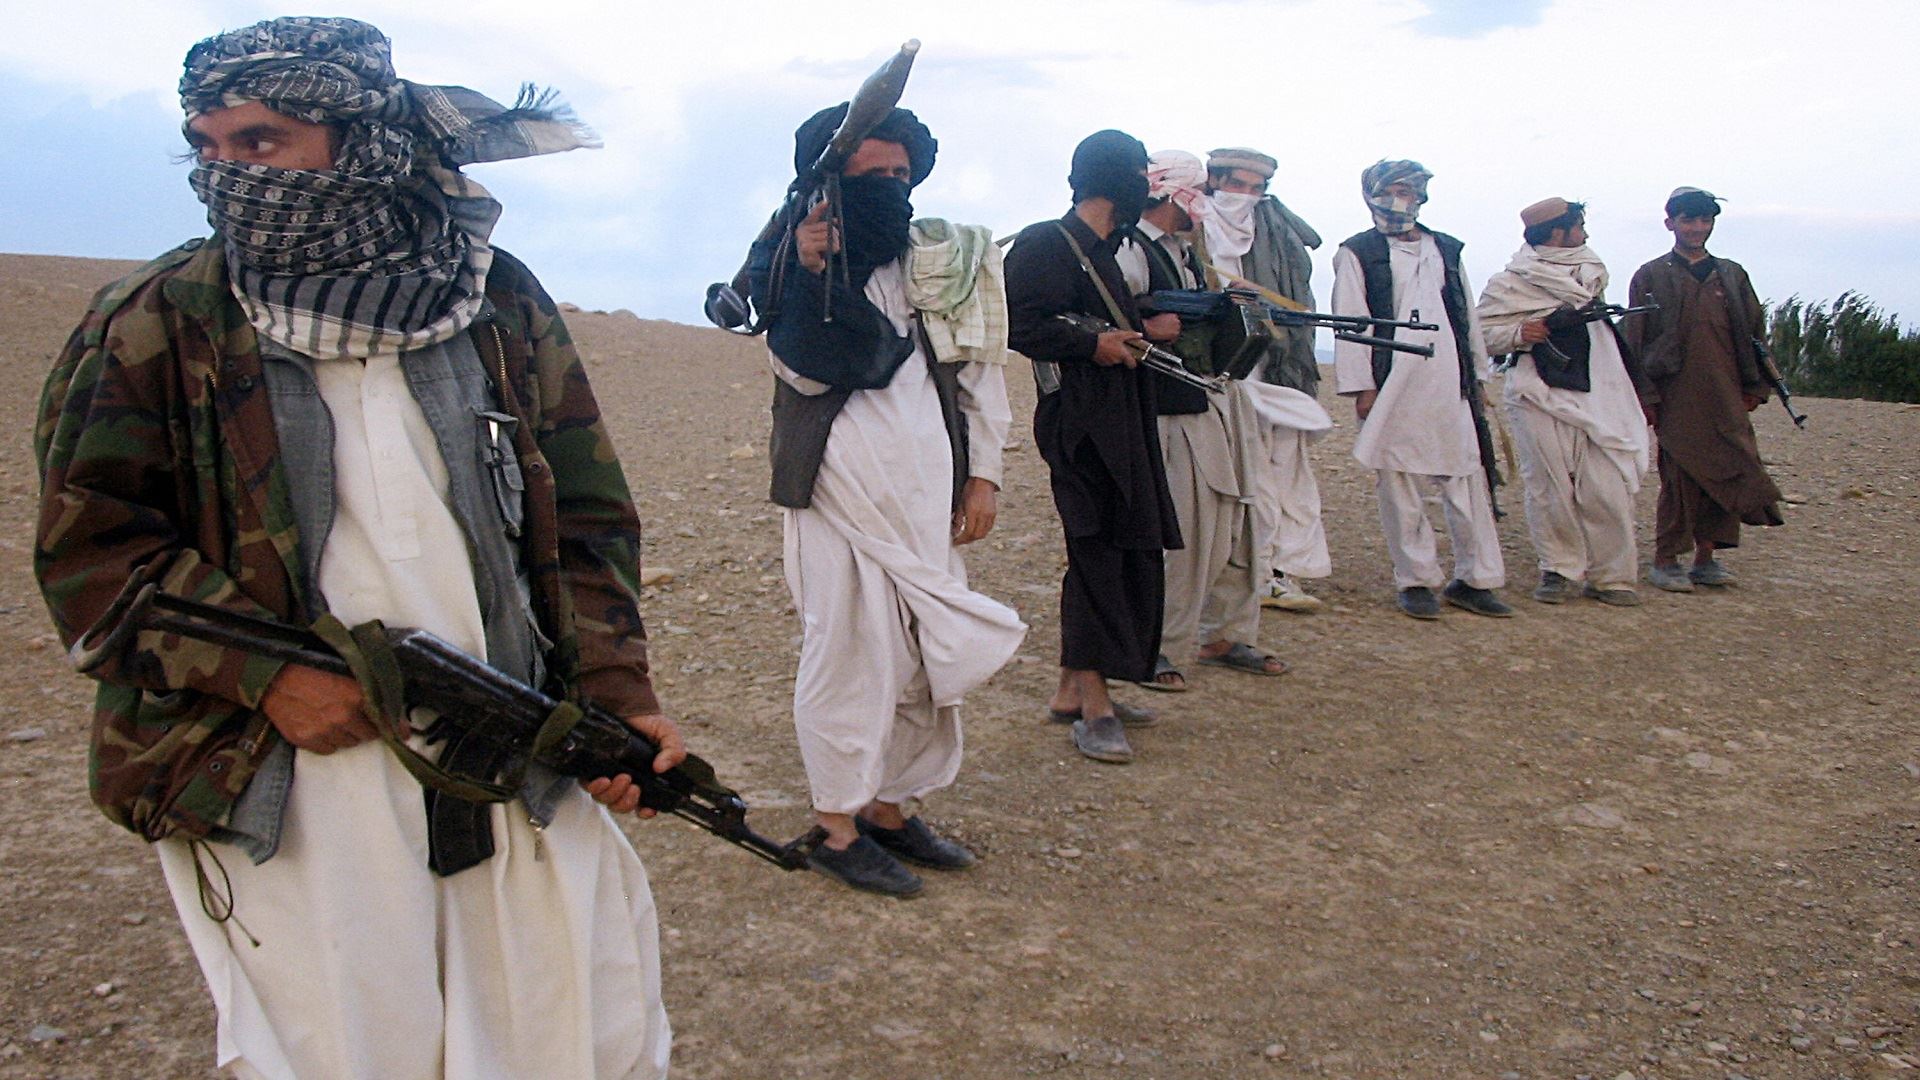 طالبان باكستان تعلن انتهاء وقف النار وتأمر باستئناف القتال